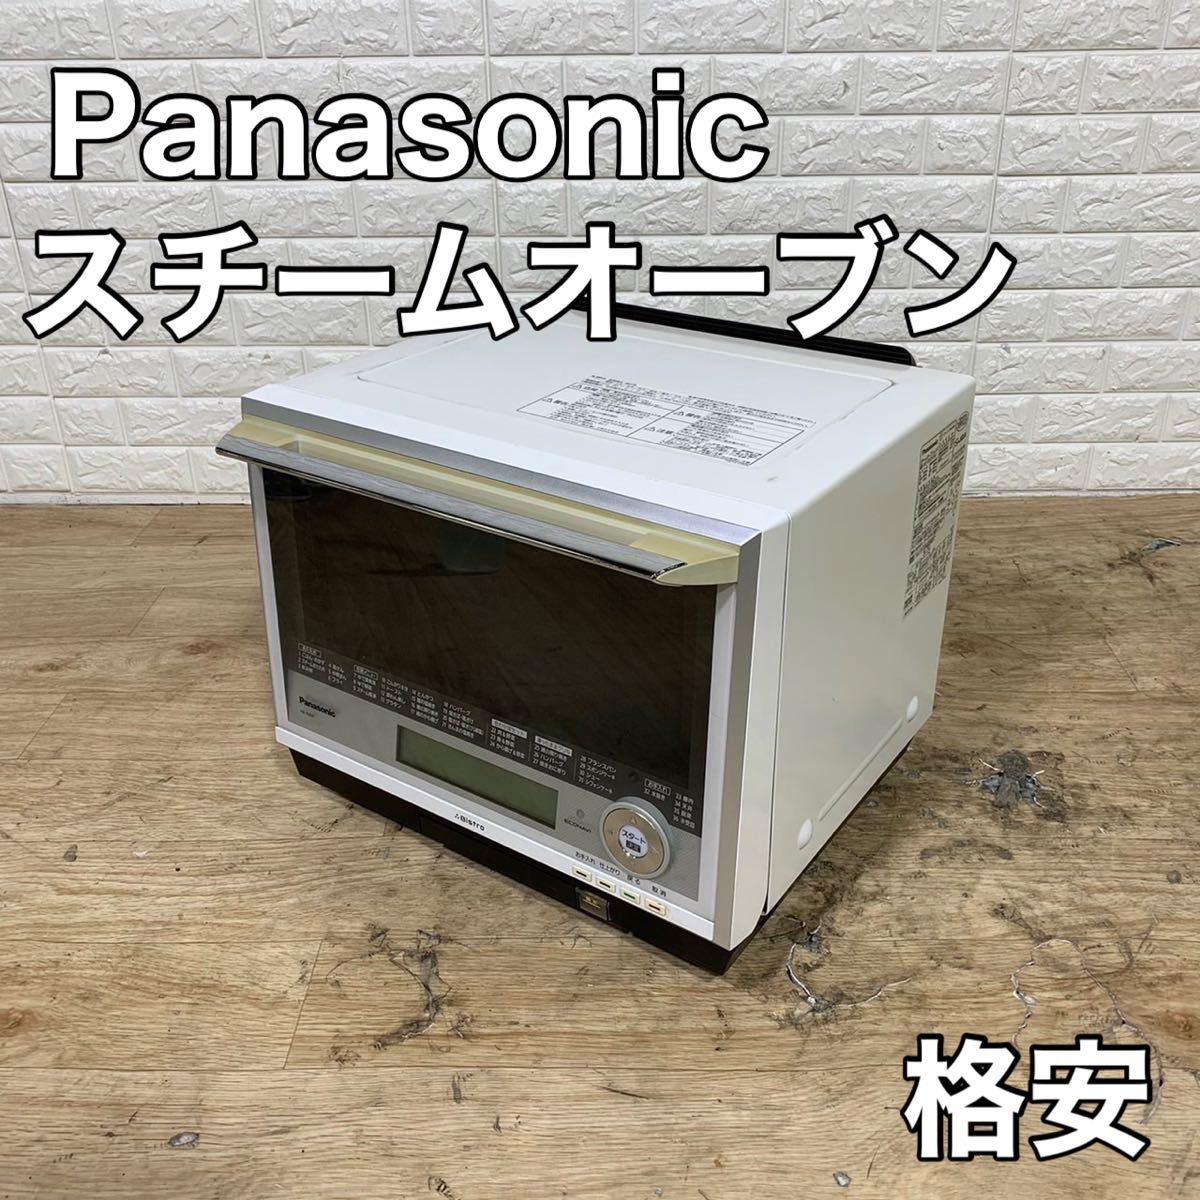 Panasonic パナソニック スチームオーブン オーブンレンジ NE-R305(W) ビストロ 家電